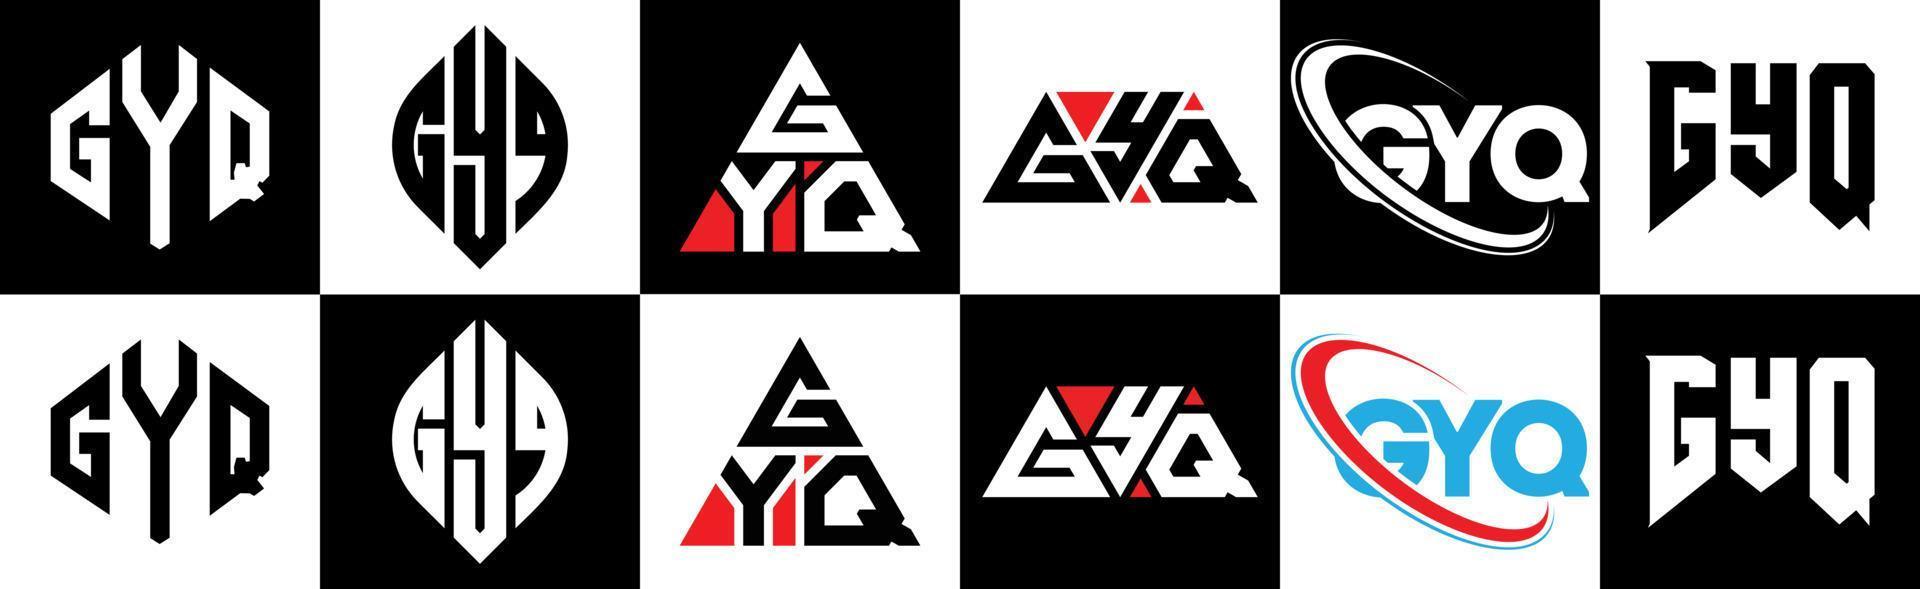 création de logo de lettre gyq en six styles. polygone gyq, cercle, triangle, hexagone, style plat et simple avec logo de lettre de variation de couleur noir et blanc dans un plan de travail. logo minimaliste et classique gyq vecteur